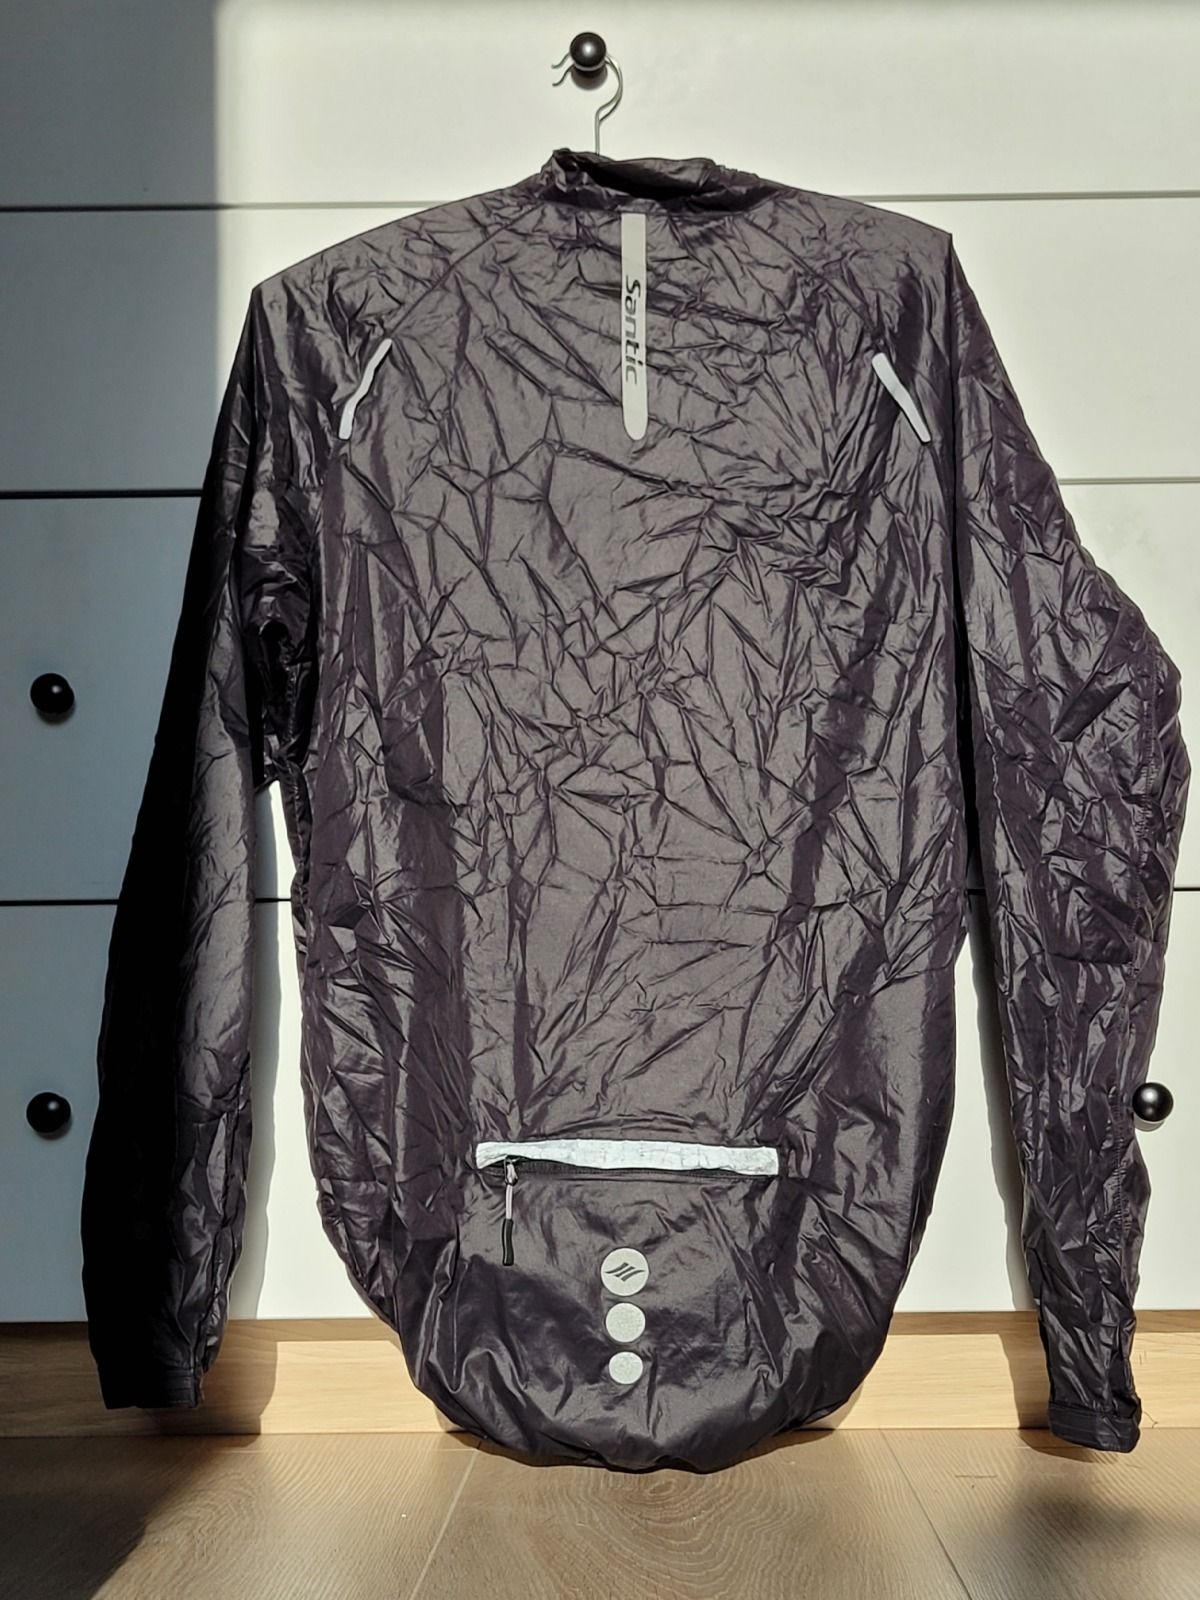 Ветровка Santic Light weight Men's Jacket размер Asia L (EU M) наш 48-50